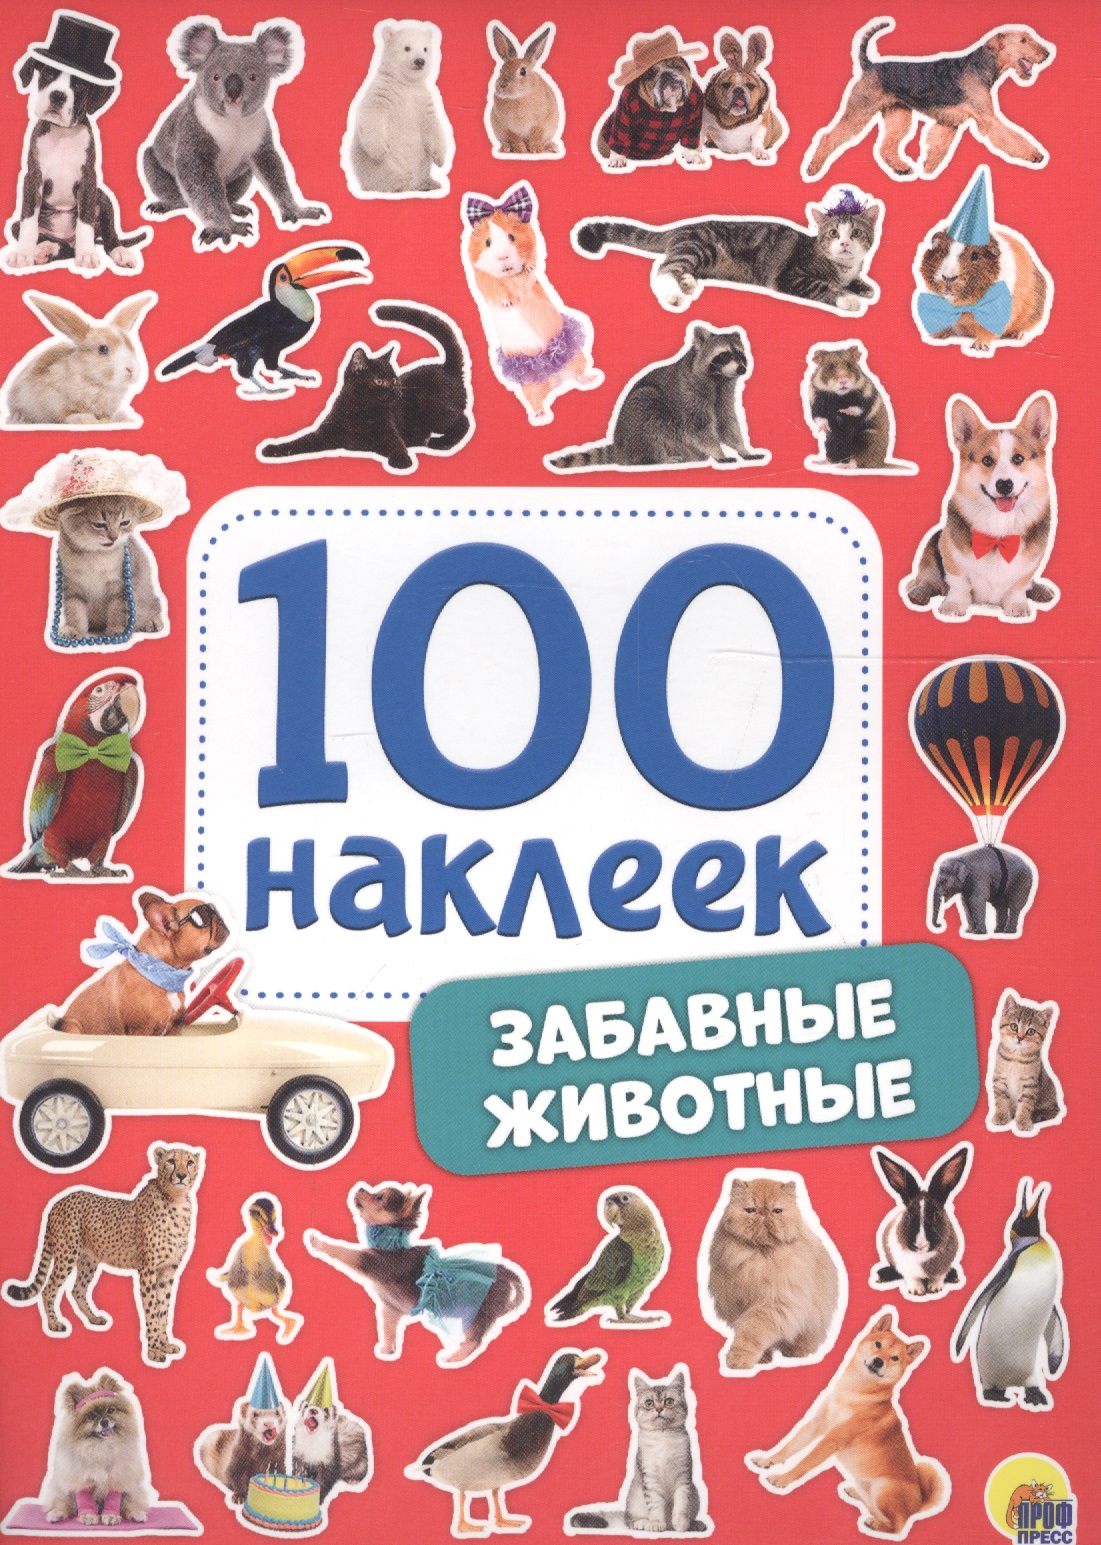 Забавные животные 500 шт новые креативные наклейки с животными и кошками 1 дюйм наклейки наклейки для награды для учеников школы детские наклейки со смайликом